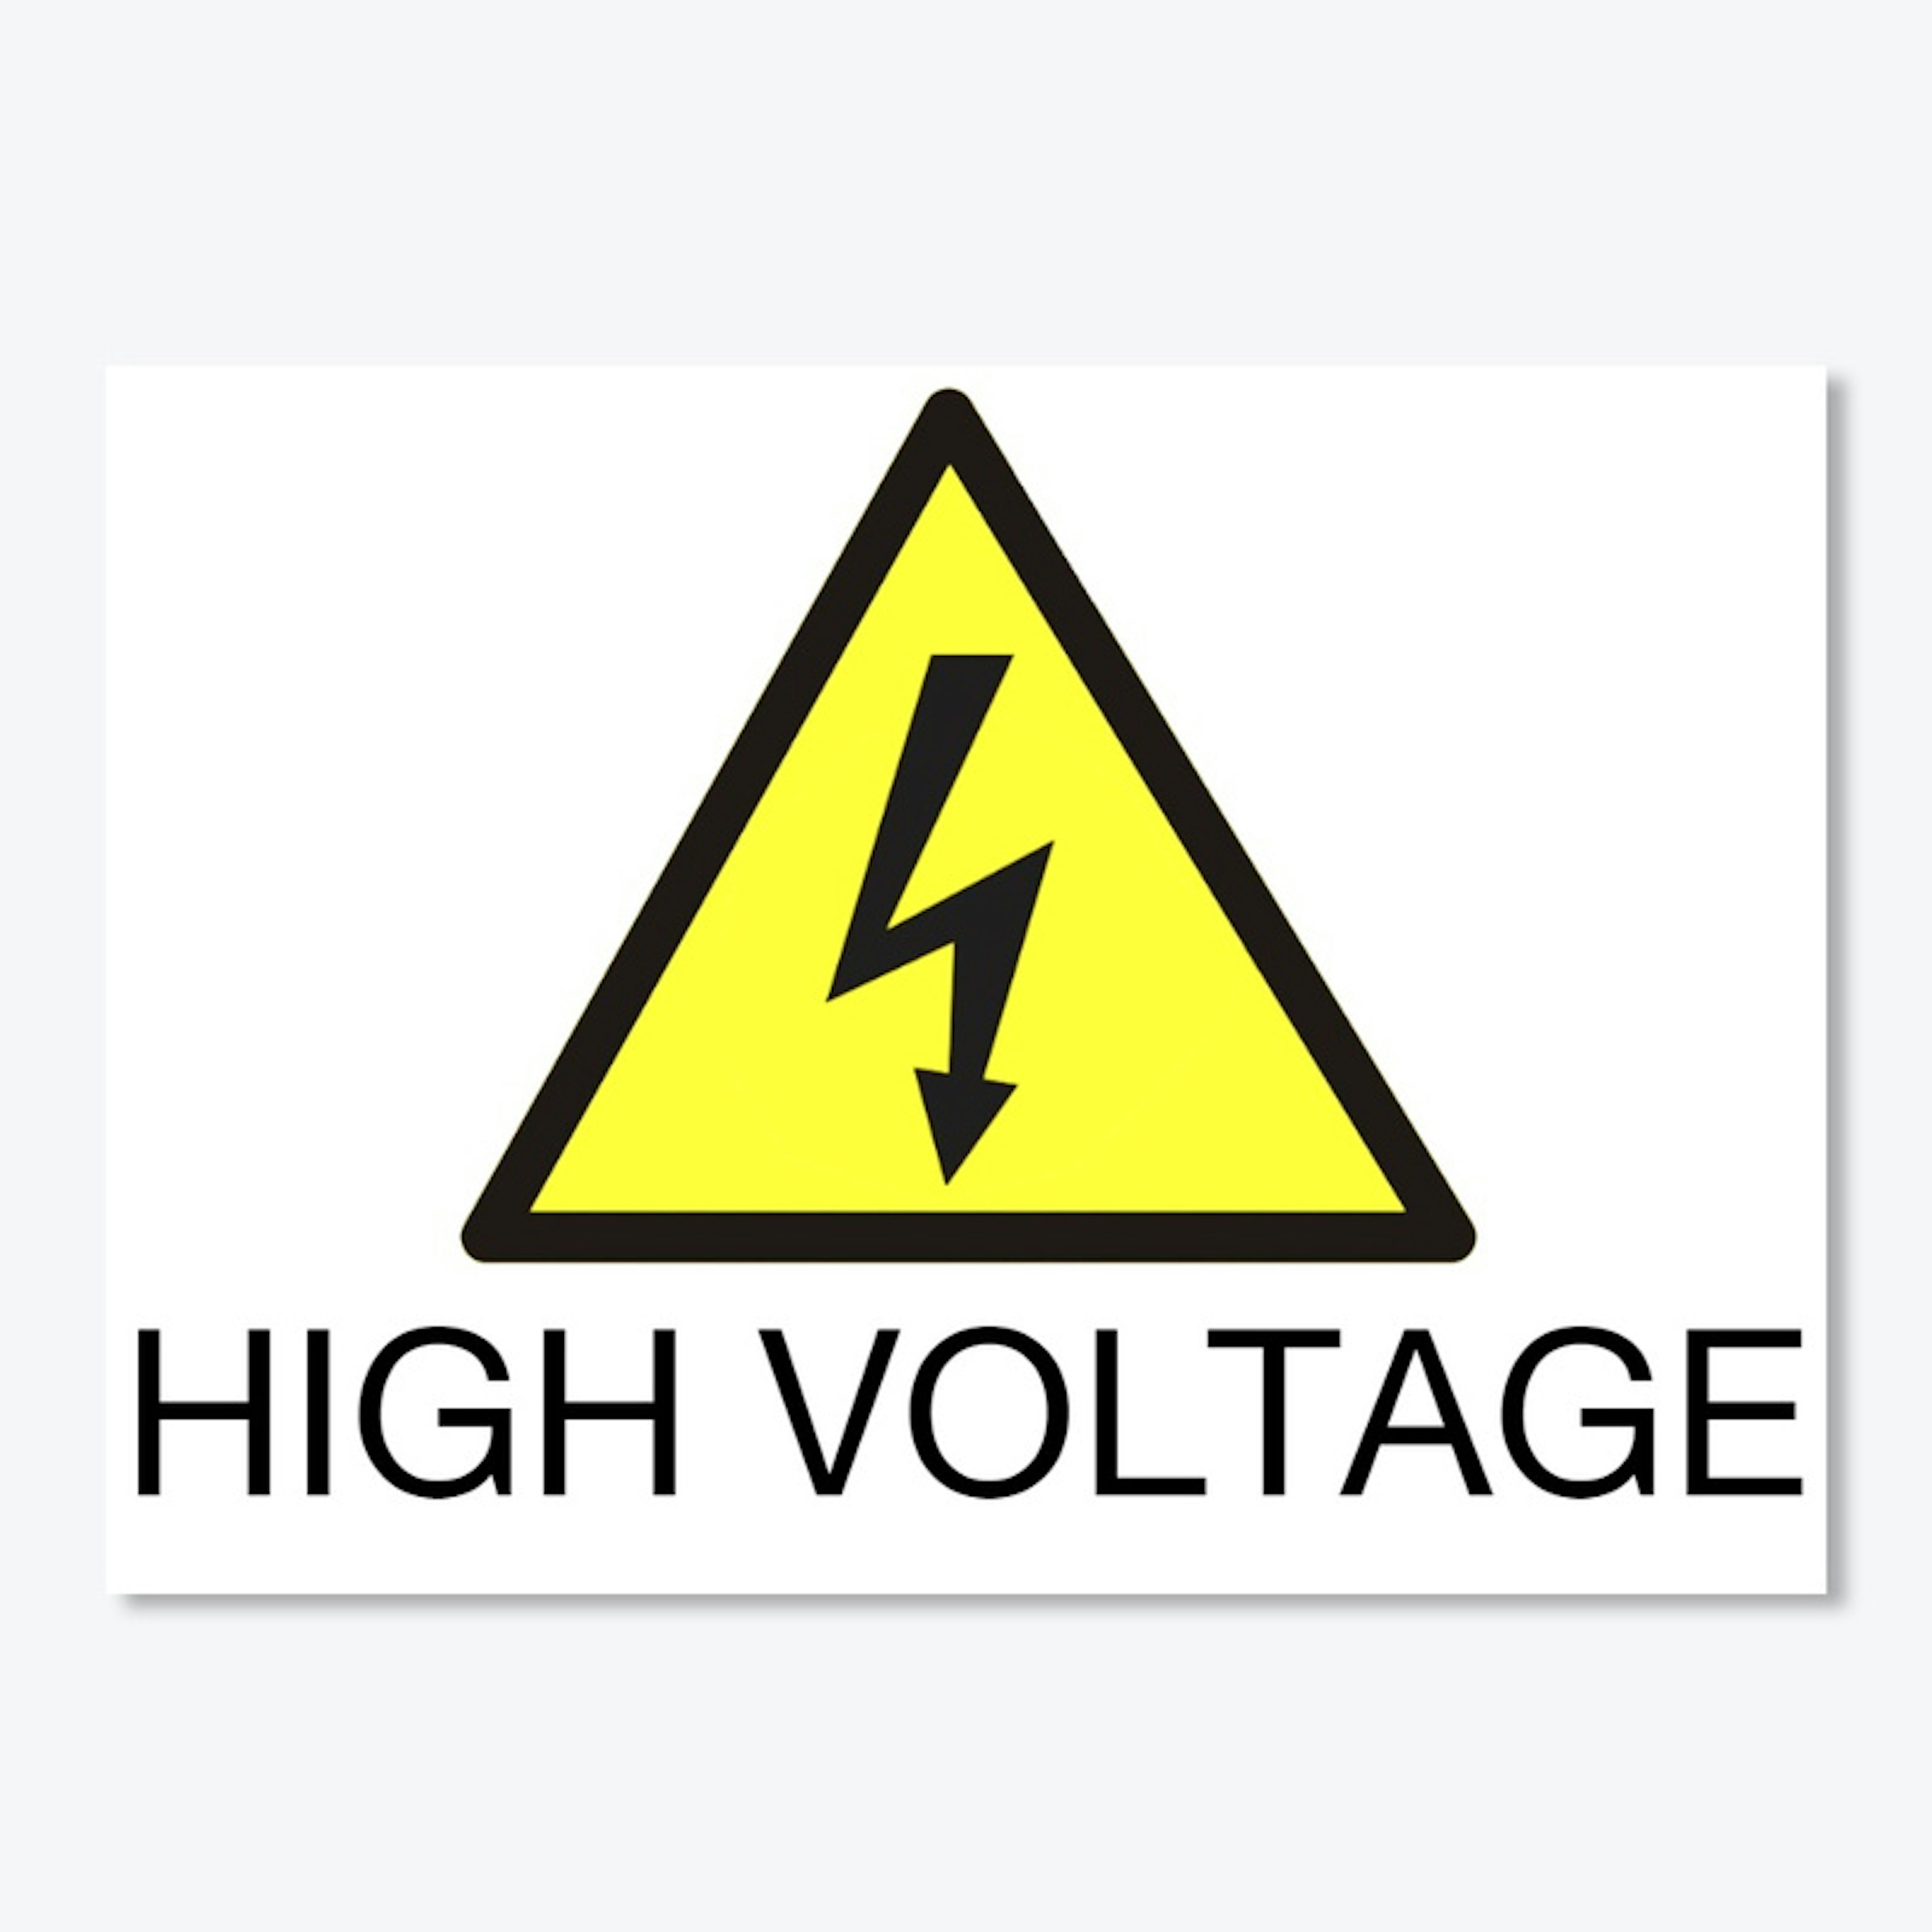 High Voltage Sign